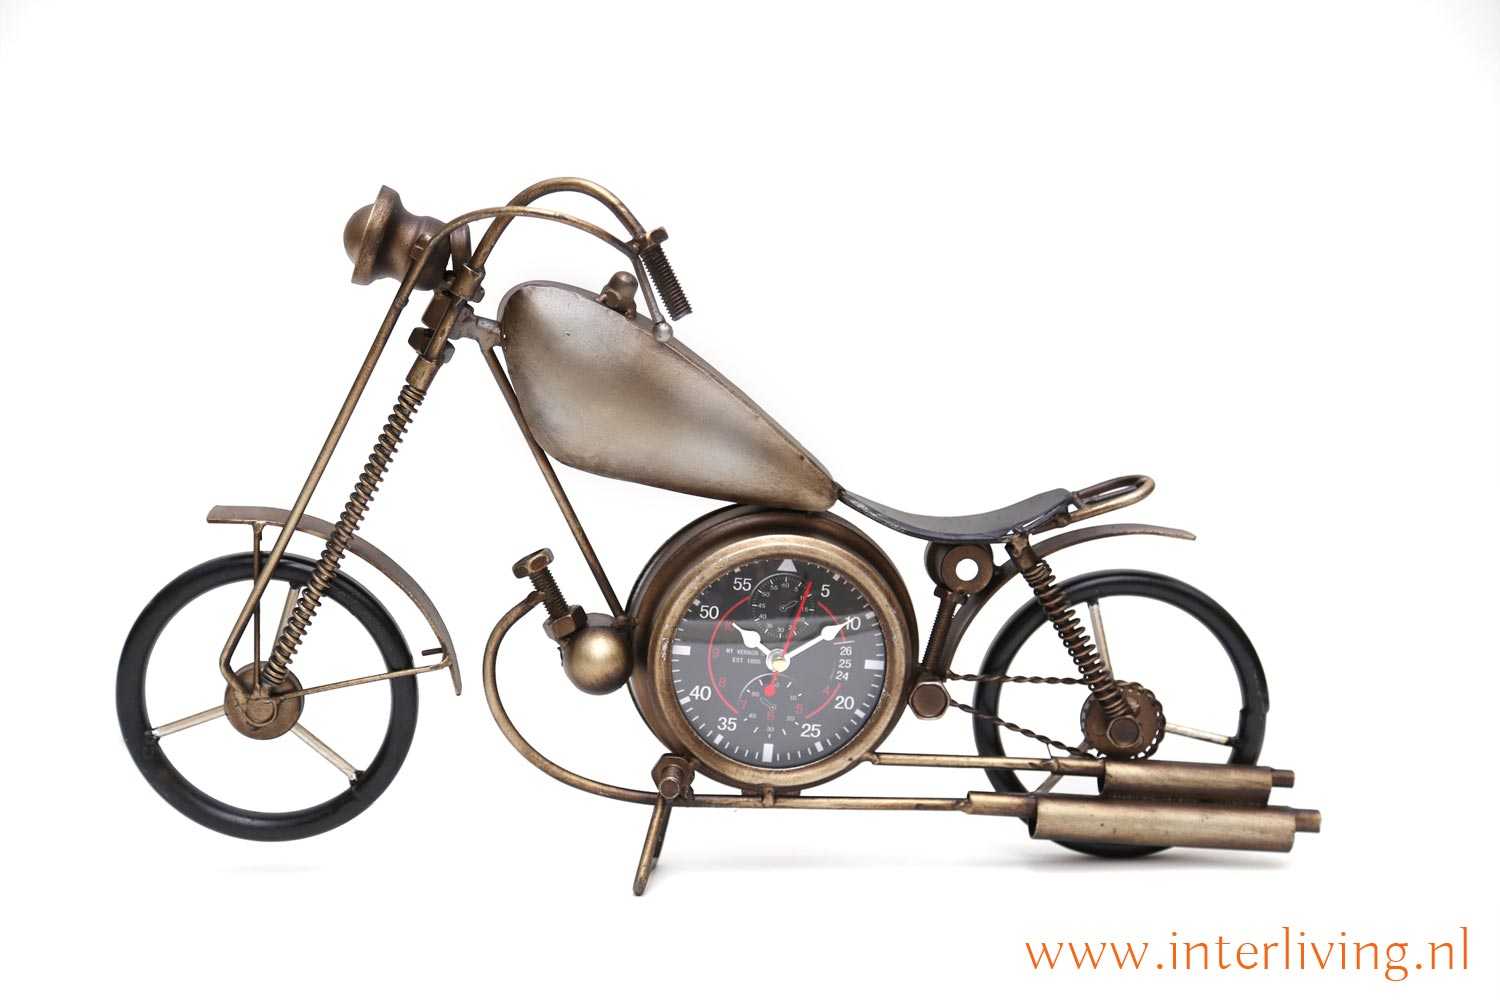 Achtervolging fundament linnen Oud model chopper motor klok - vintage styling - een nostalgische trend  voor in huis (leuk cadeau idee) - Interliving shop